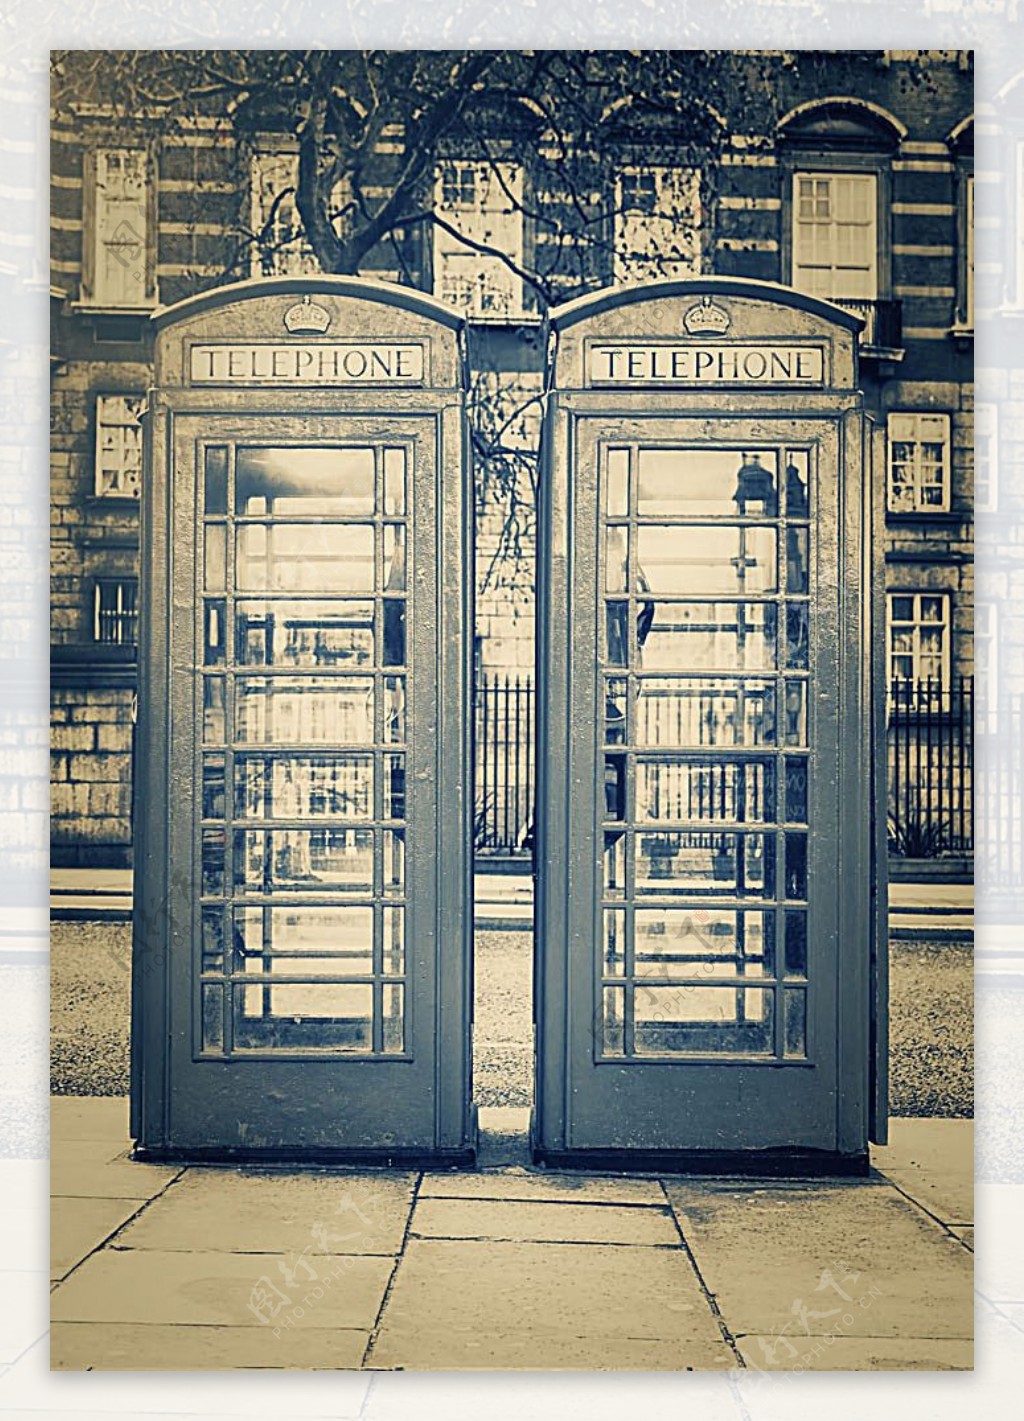 伦敦电话亭风景